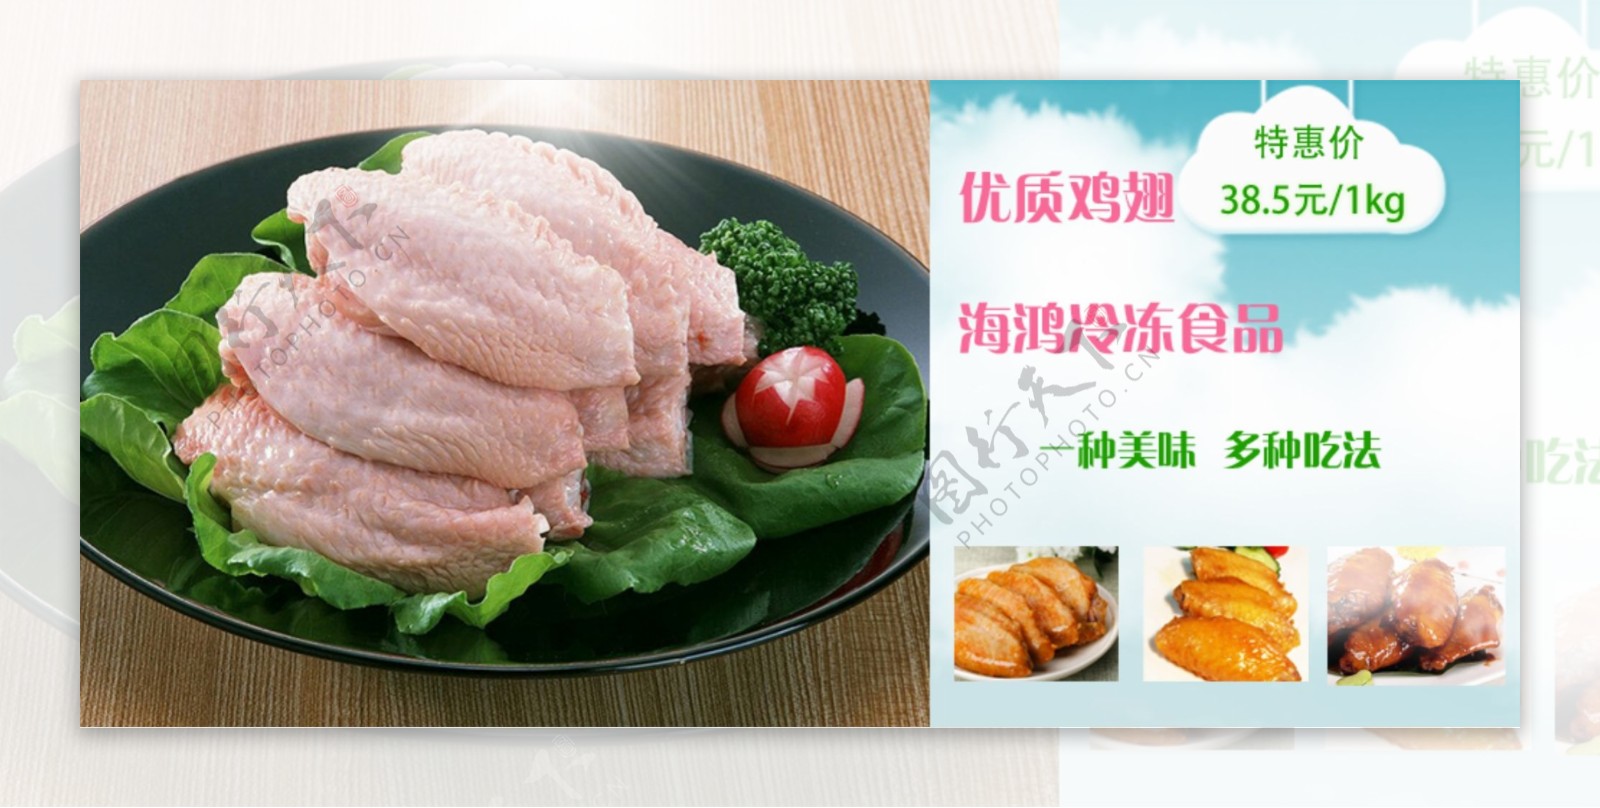 鸡翅鸡翅广告食品广告横幅淘宝素材